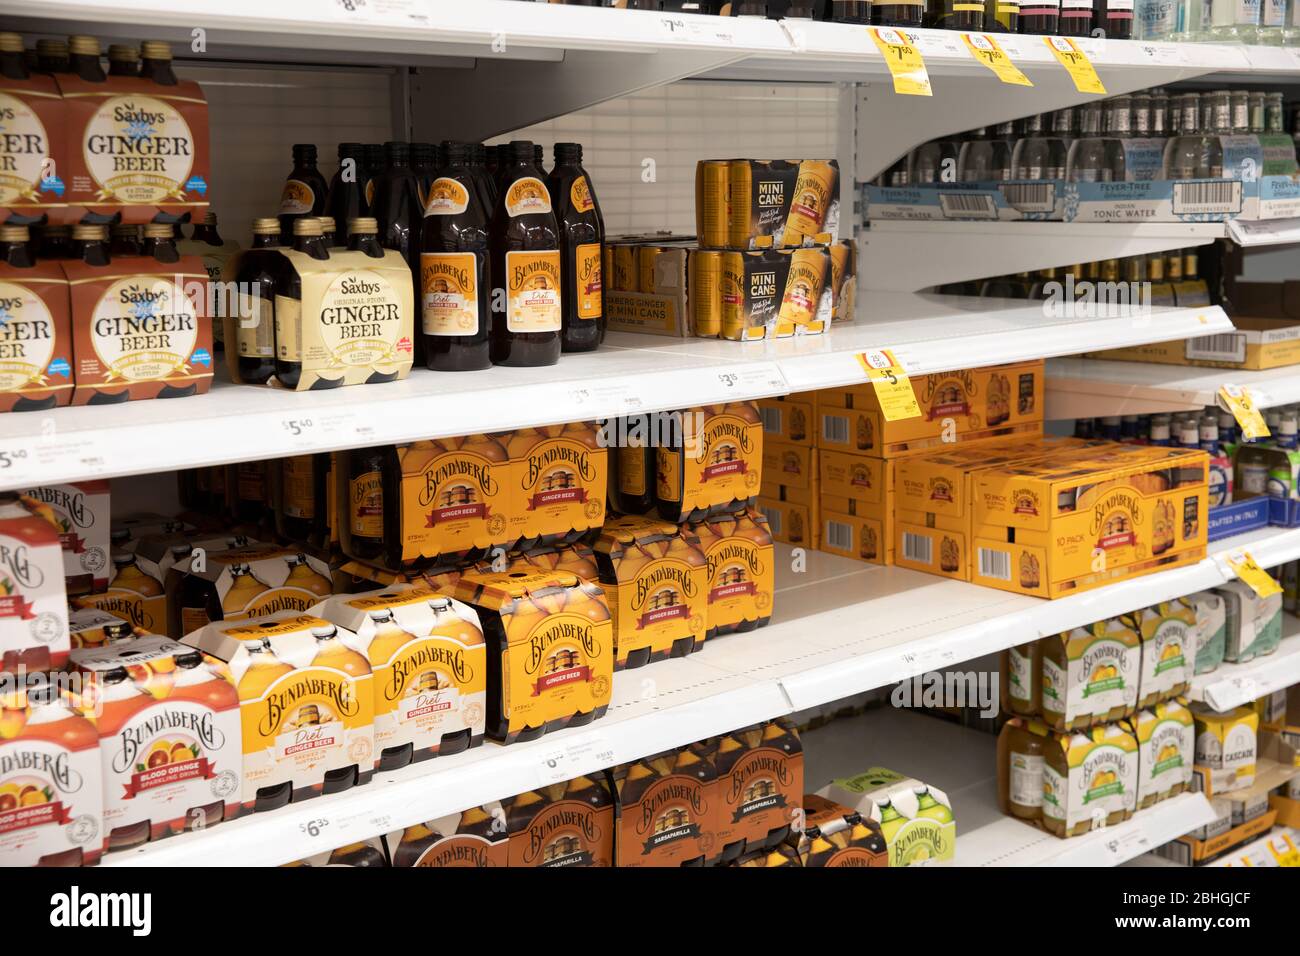 Bundaberg drinks and ginger beer on supermarket shelves, Sydney,Australia Stock Photo